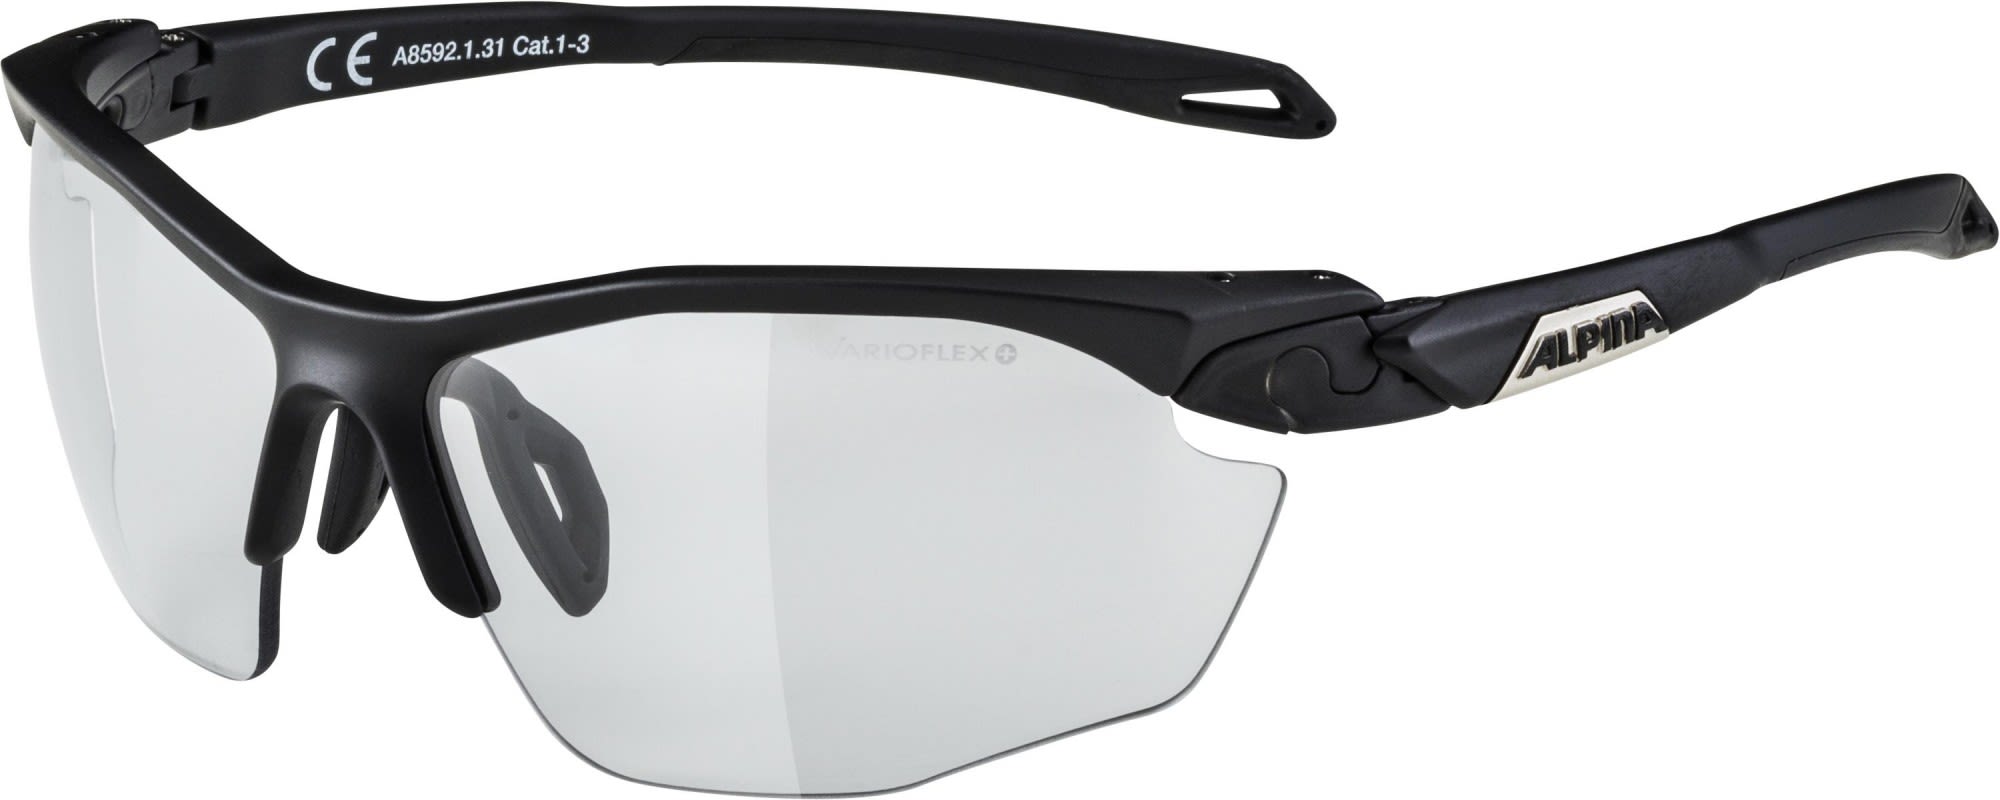 Alpina Vielseitige hochwertige Performance Sportbrille Black Matt - Black